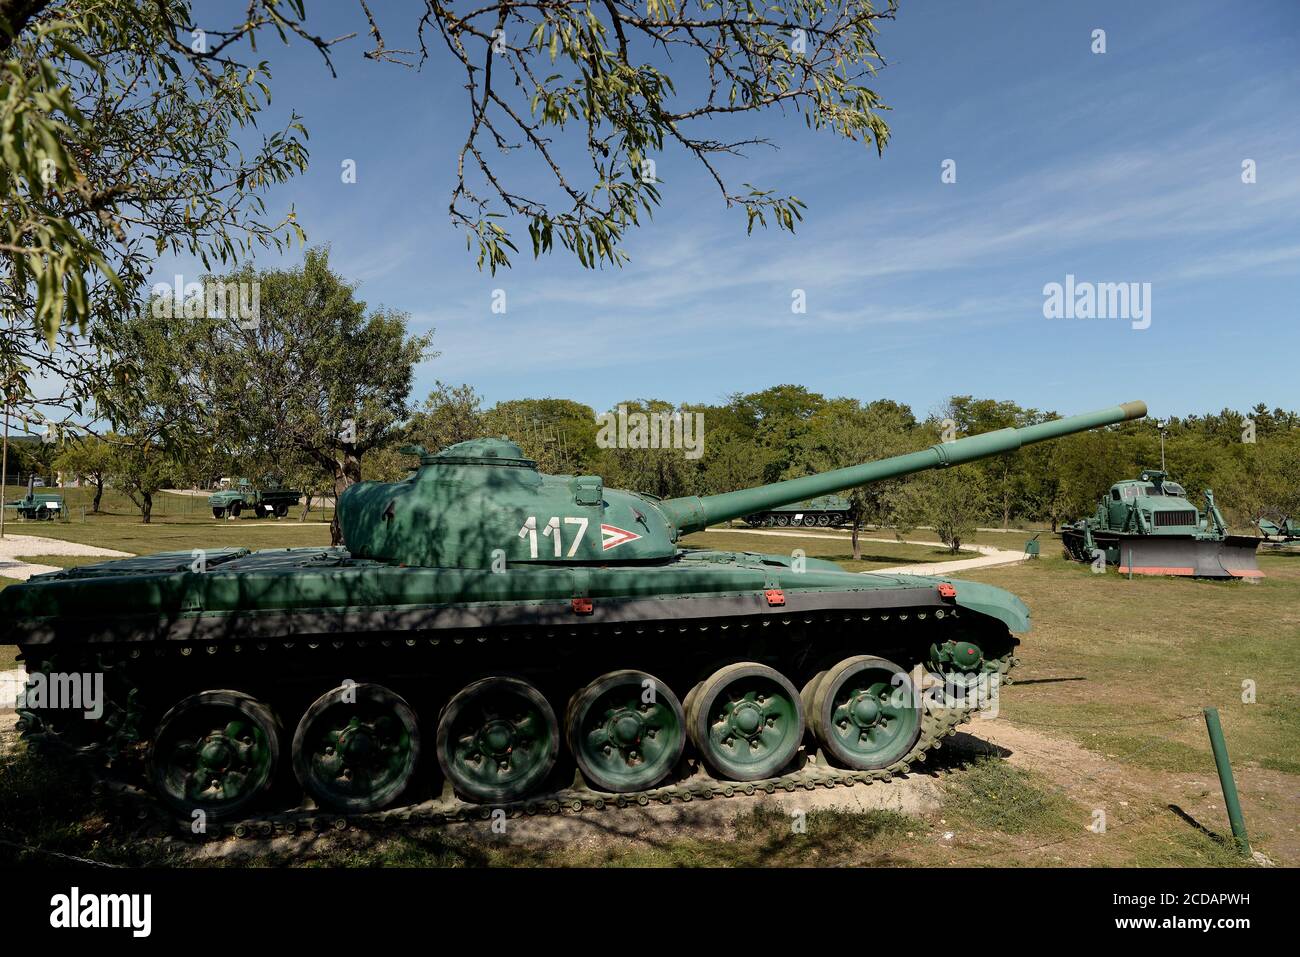 Le char de combat principal T-72 est exposé au musée.le Musée militaire de Zánka est une exposition en plein air contenant une variété d'armurerie utilisée par les forces de défense hongroises. Zánka est un village du comté de Veszprém situé sur les rives du lac Balaton, à 150 km au sud-ouest de la capitale, Budapest, Hongrie. Banque D'Images